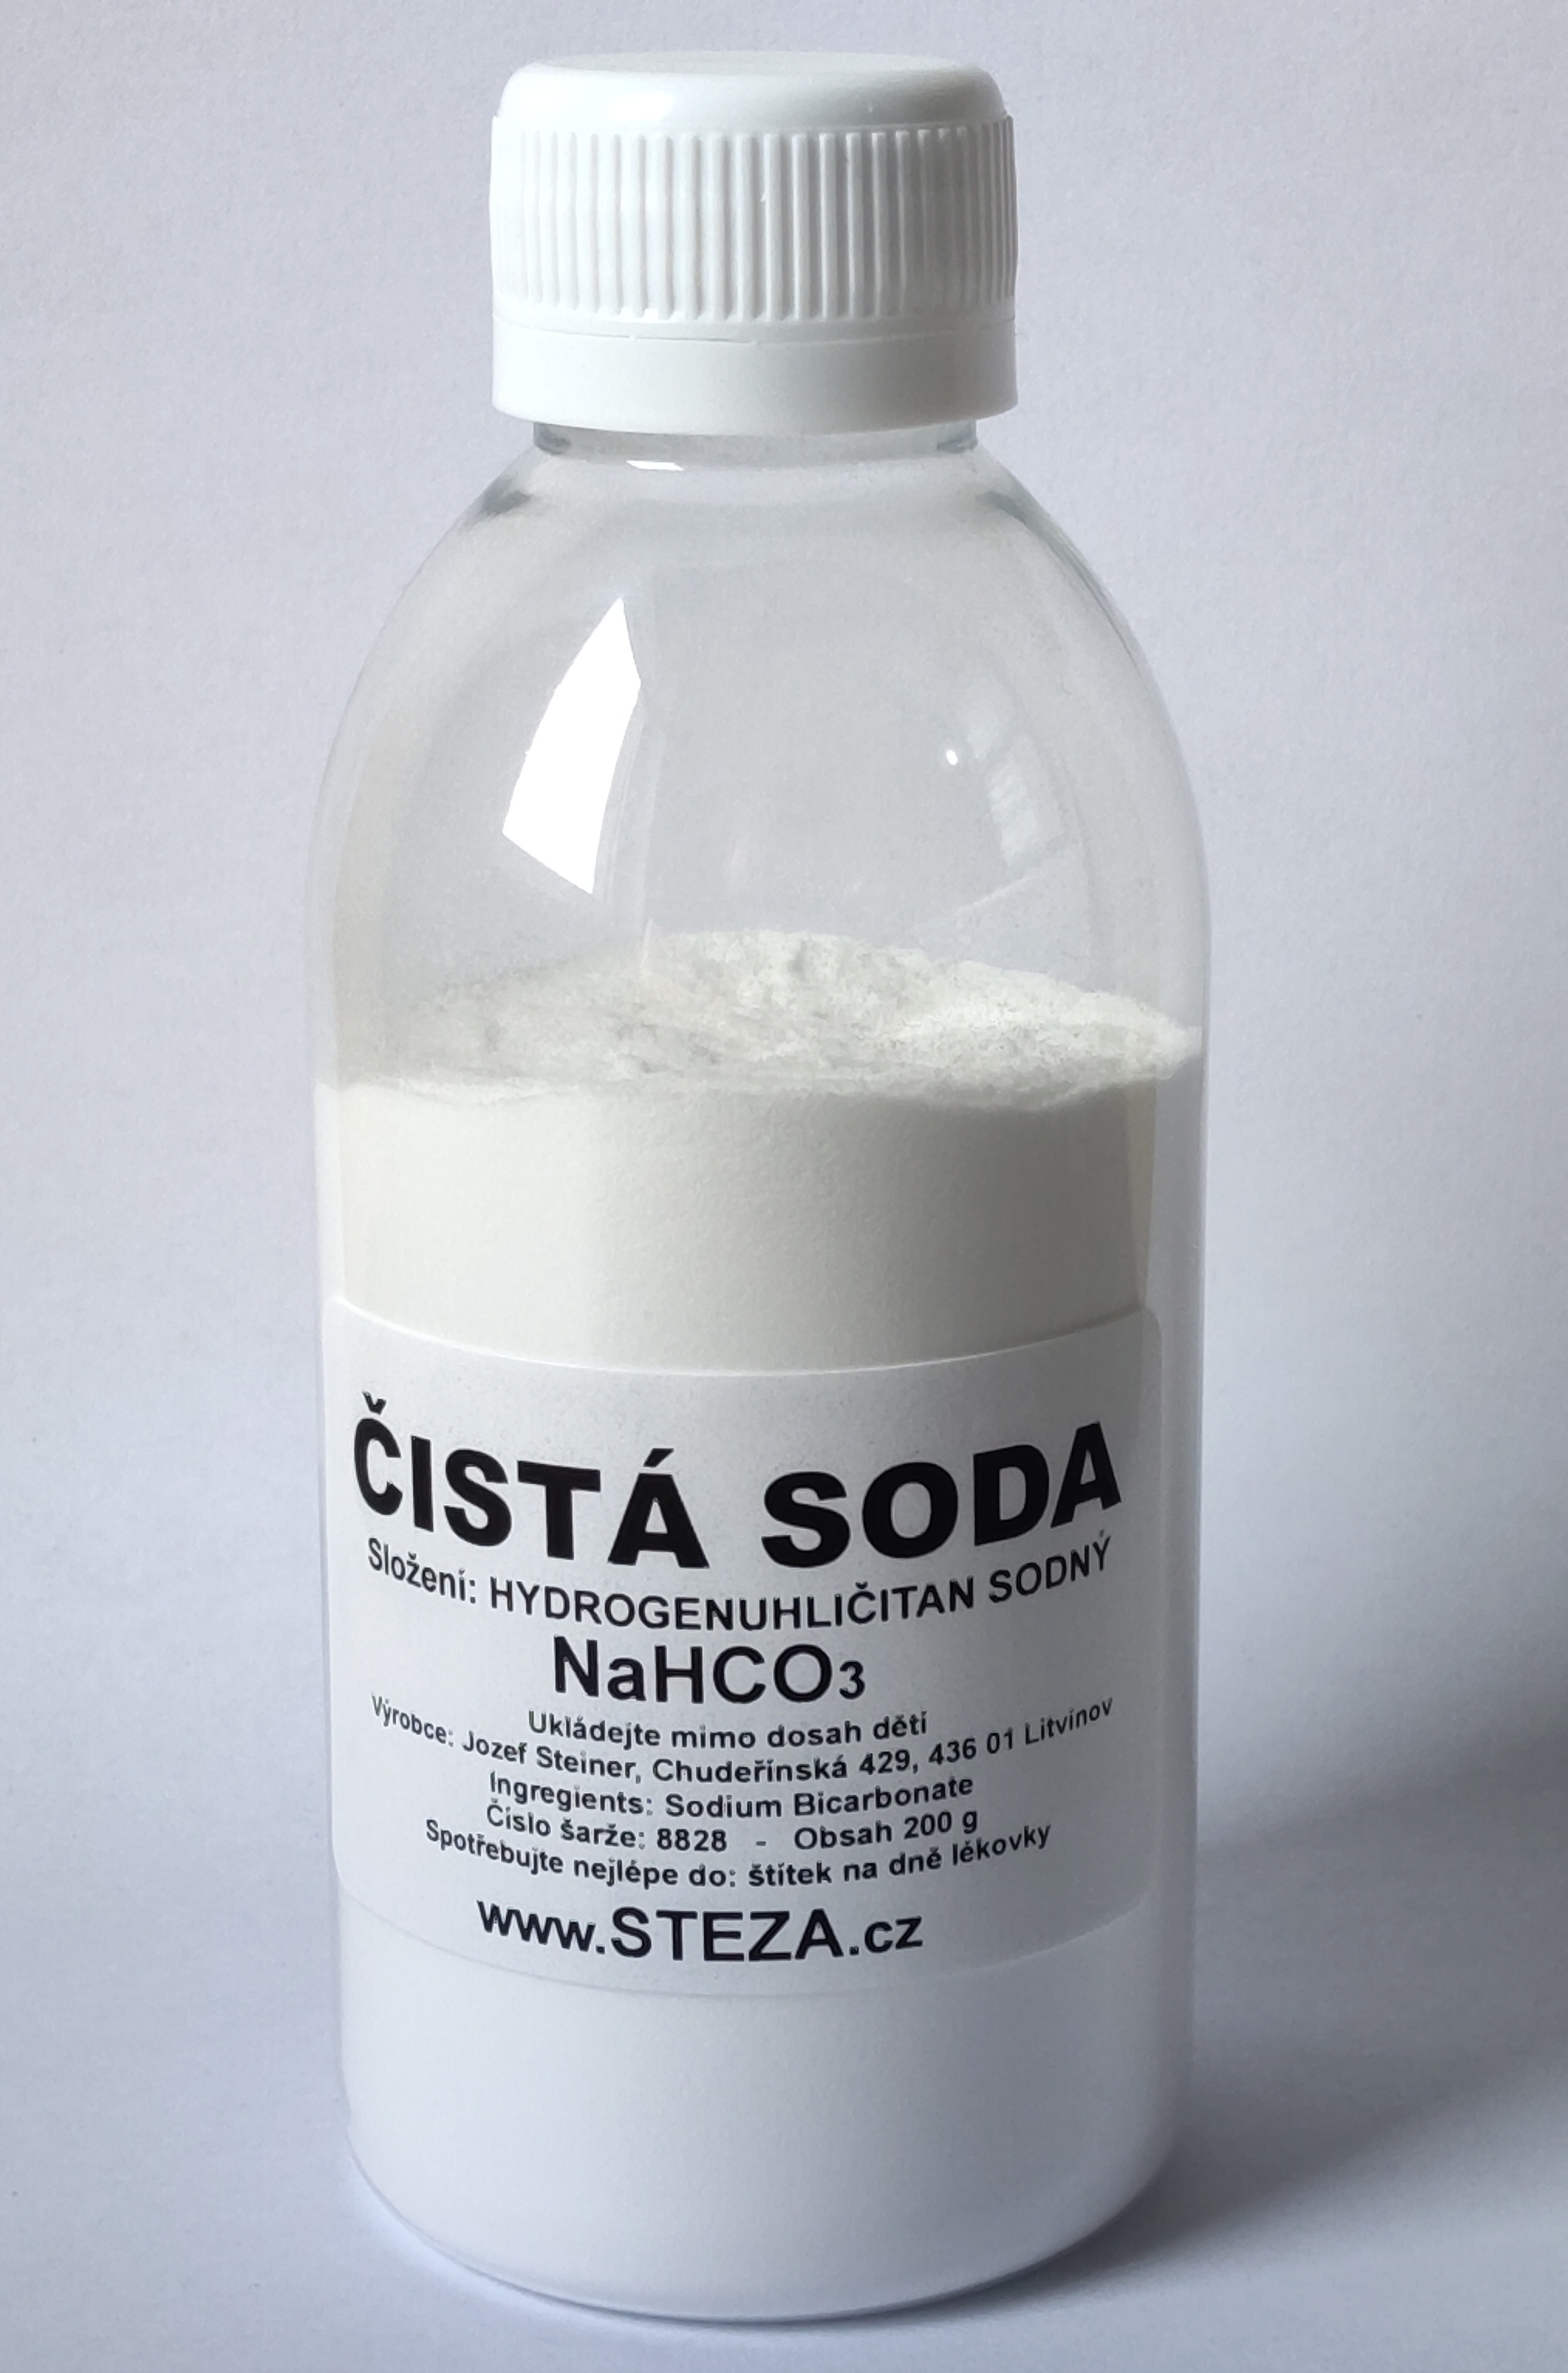 STEZA - Čistá soda 2000g NaHCO3